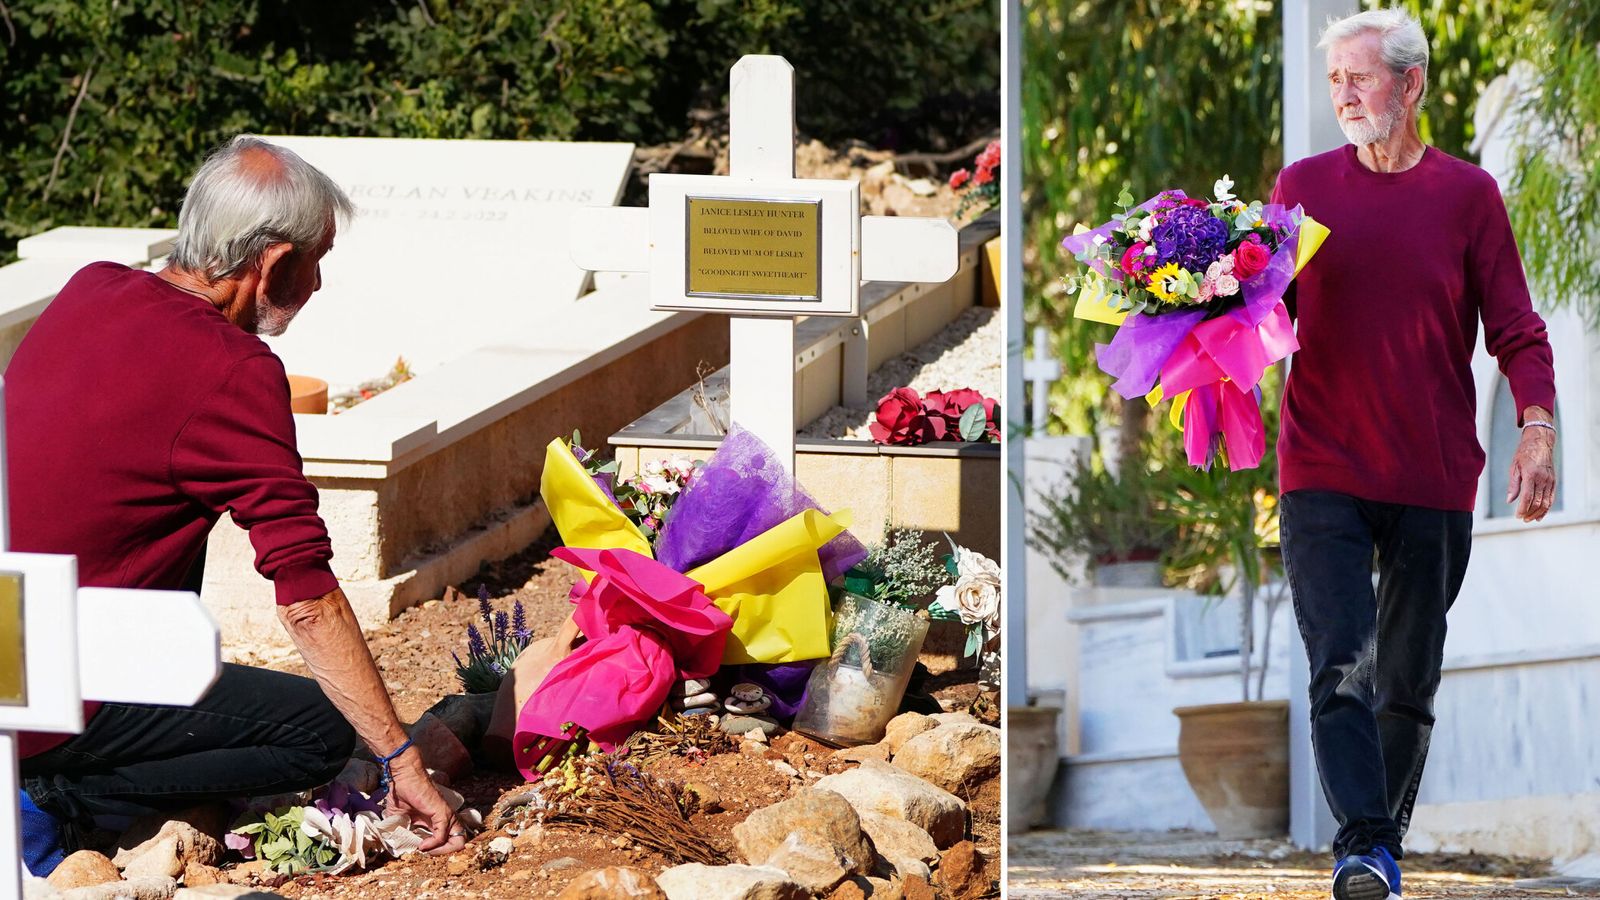 Υπόθεση Τρεμιθούσας: Πήγε λουλούδια και γονάτισε μπροστά στον τάφο της γυναίκας του ο 76χρονος - Δείτε φωτογραφίες 